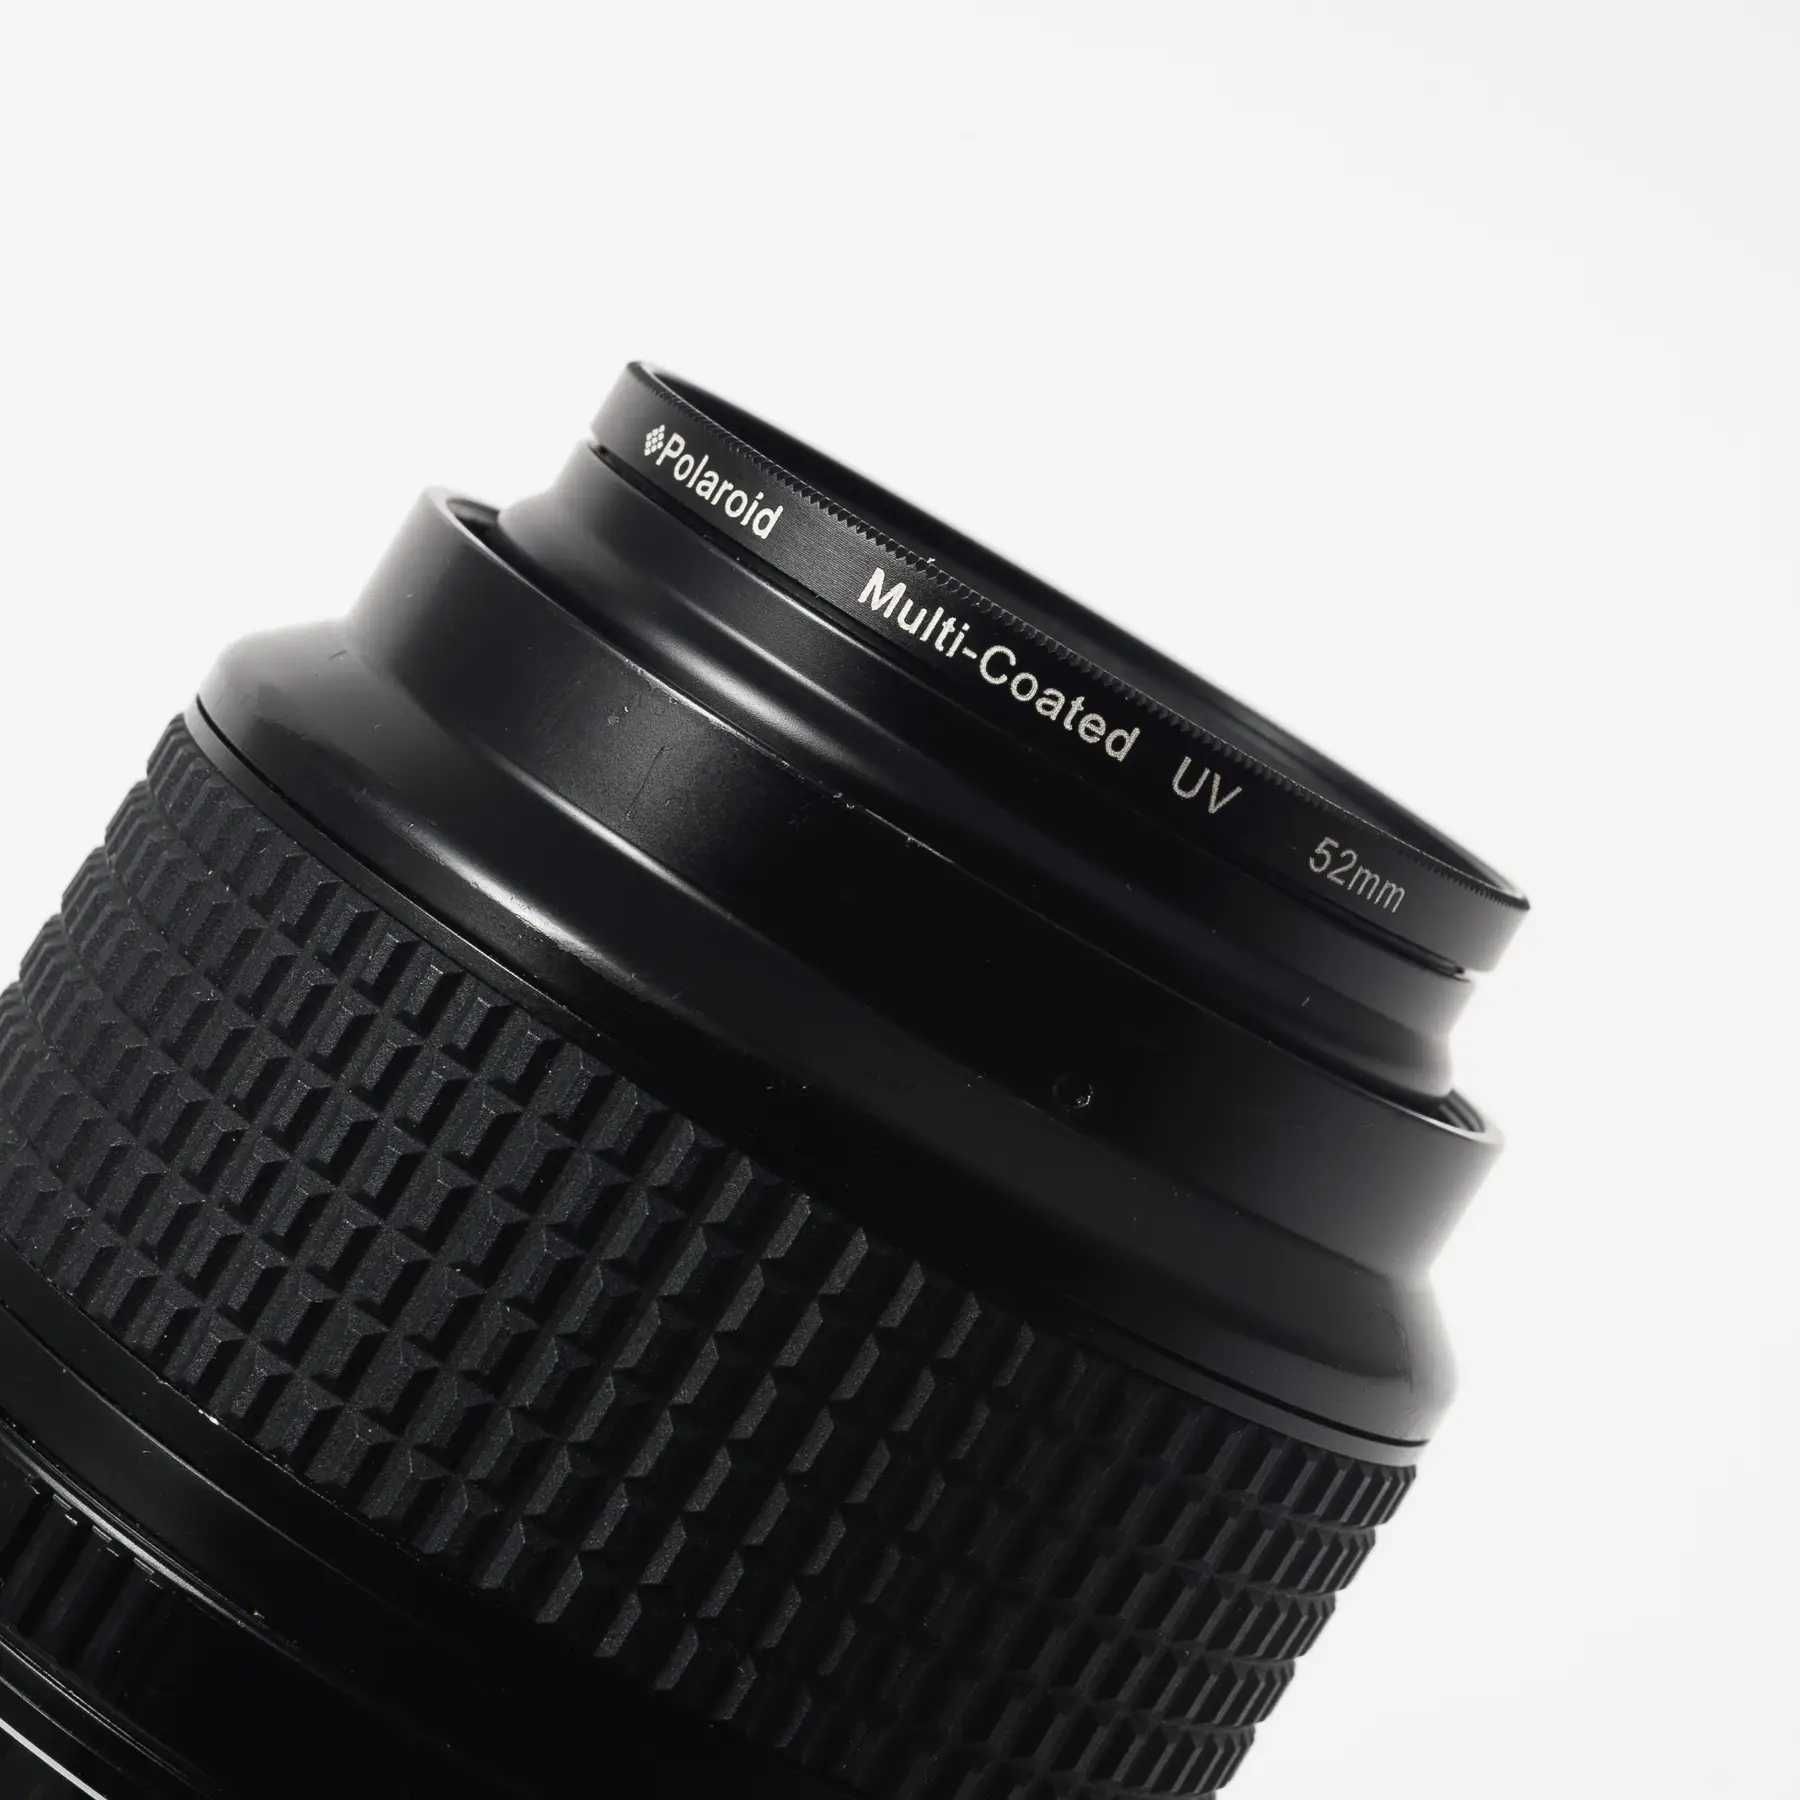 Об'єктив Nikon 105mm f/2.8D AF Micro-Nikkor